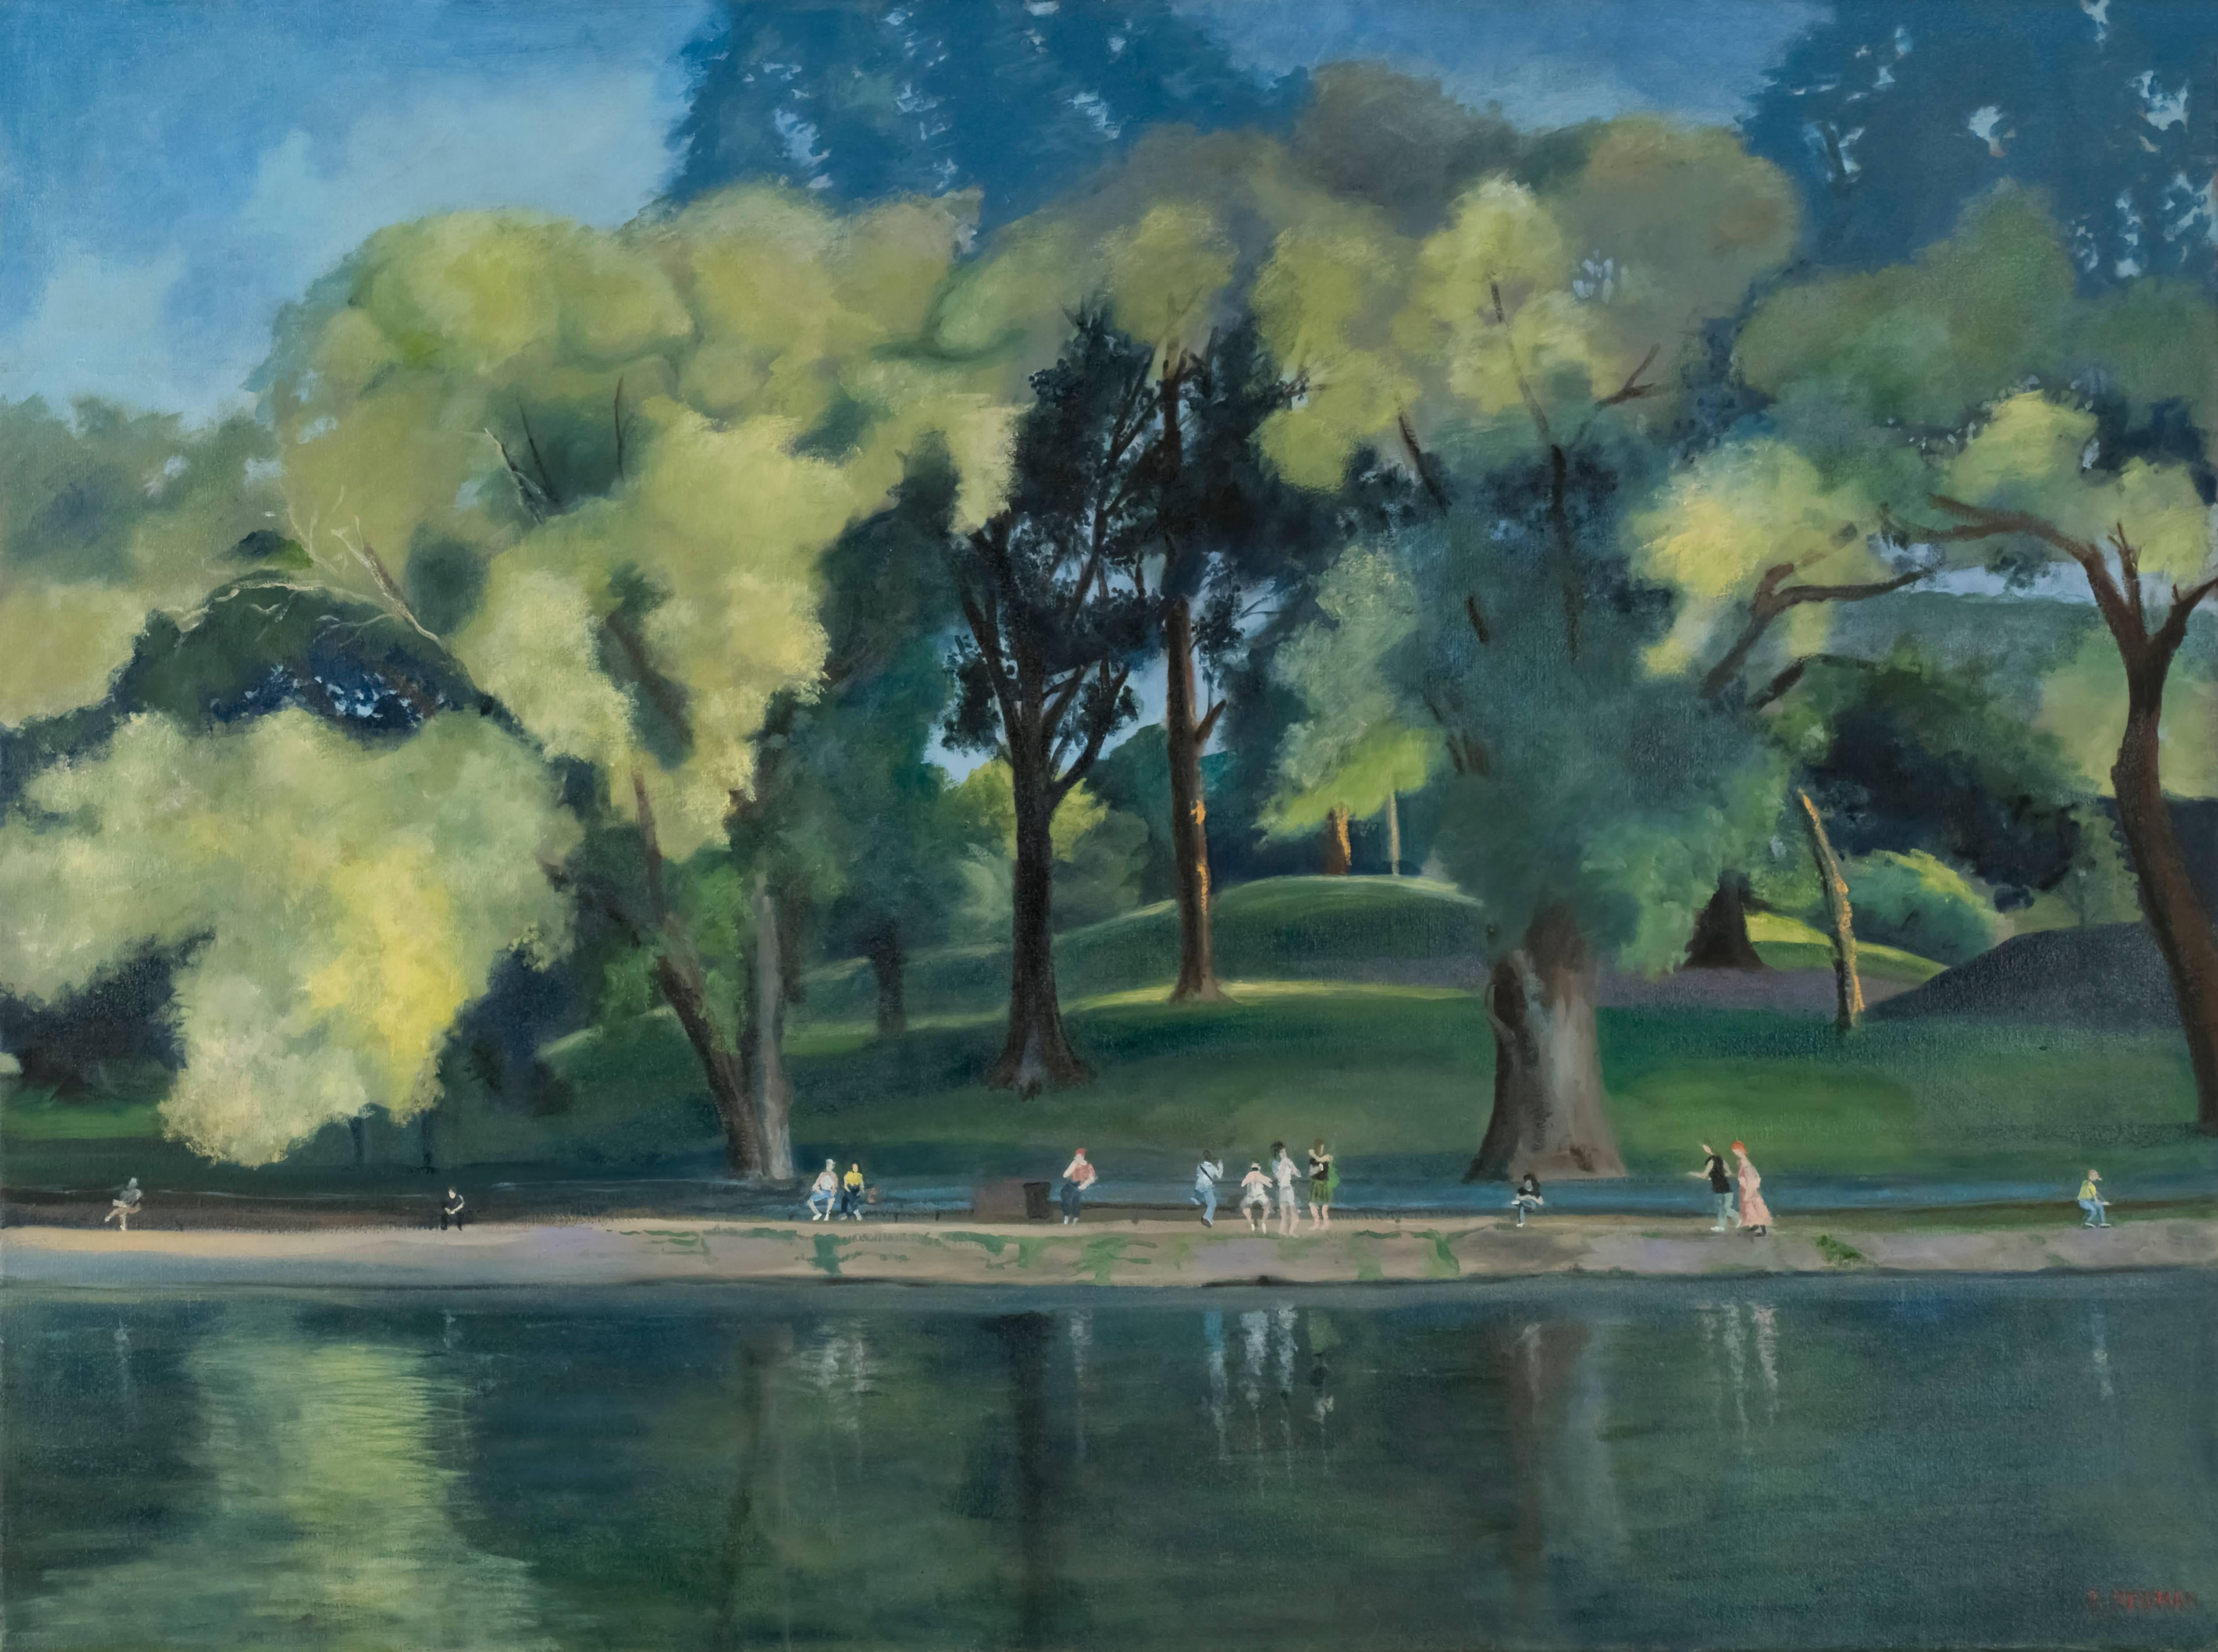 Rachel Newman Landscape Painting - Central Park Lake New York City